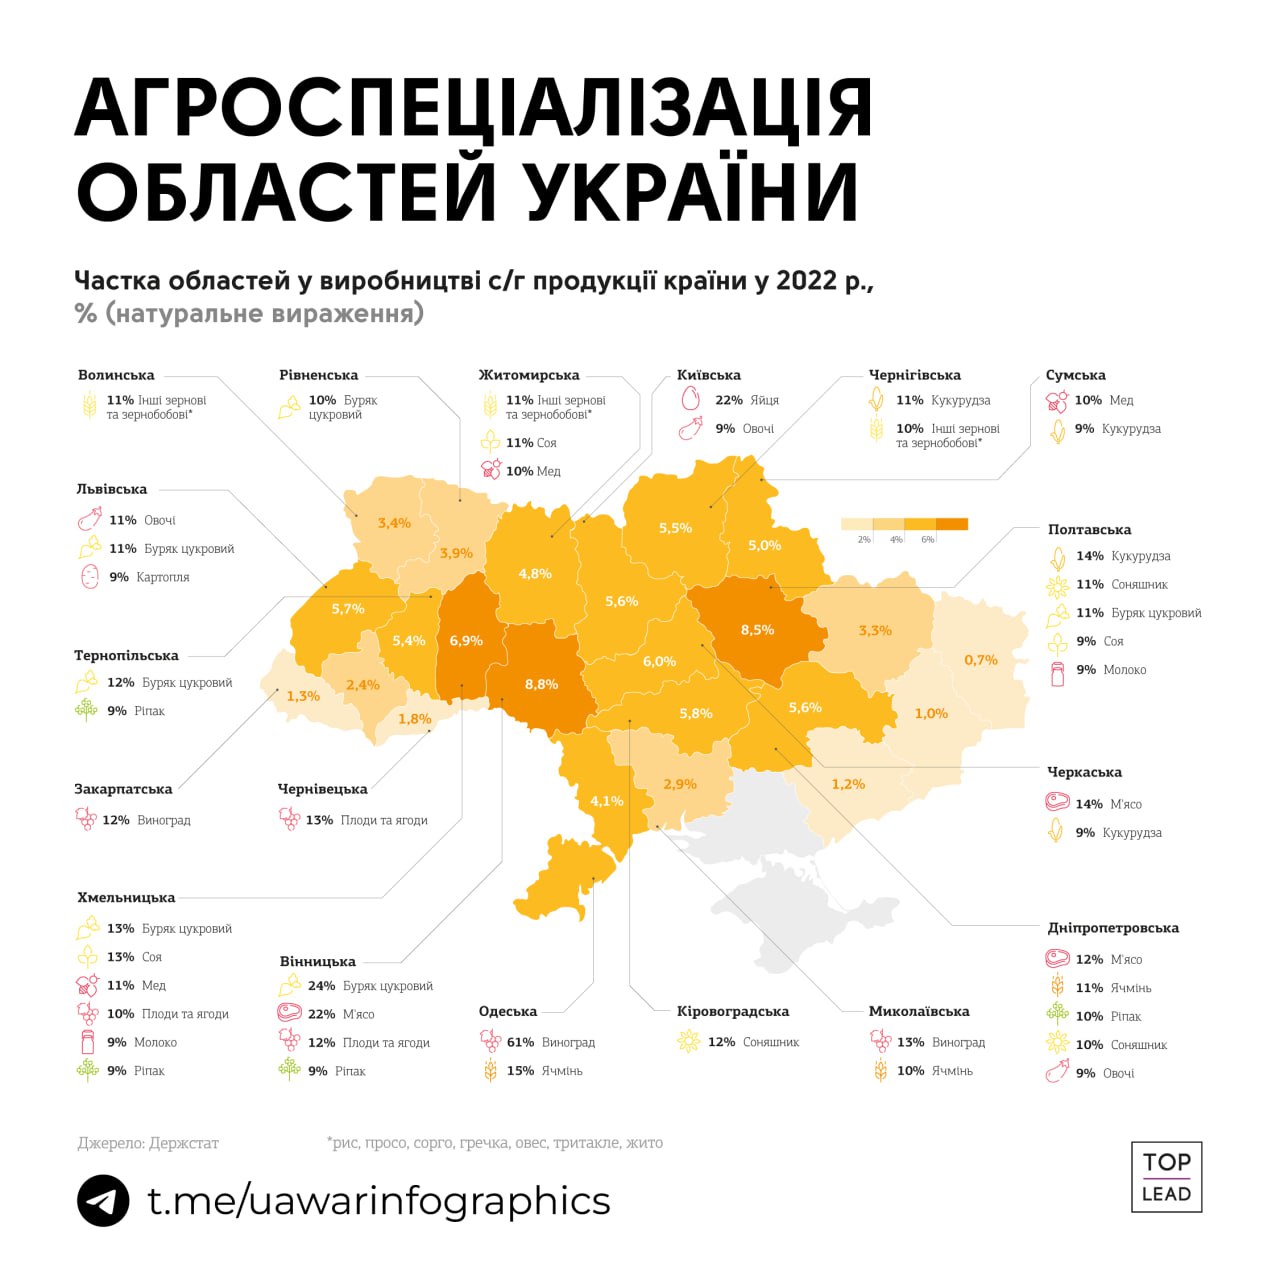 Одеська область дає Україні 61% винограду, Вінницька — 24% цукрового буряка, Київська — 22% яєць